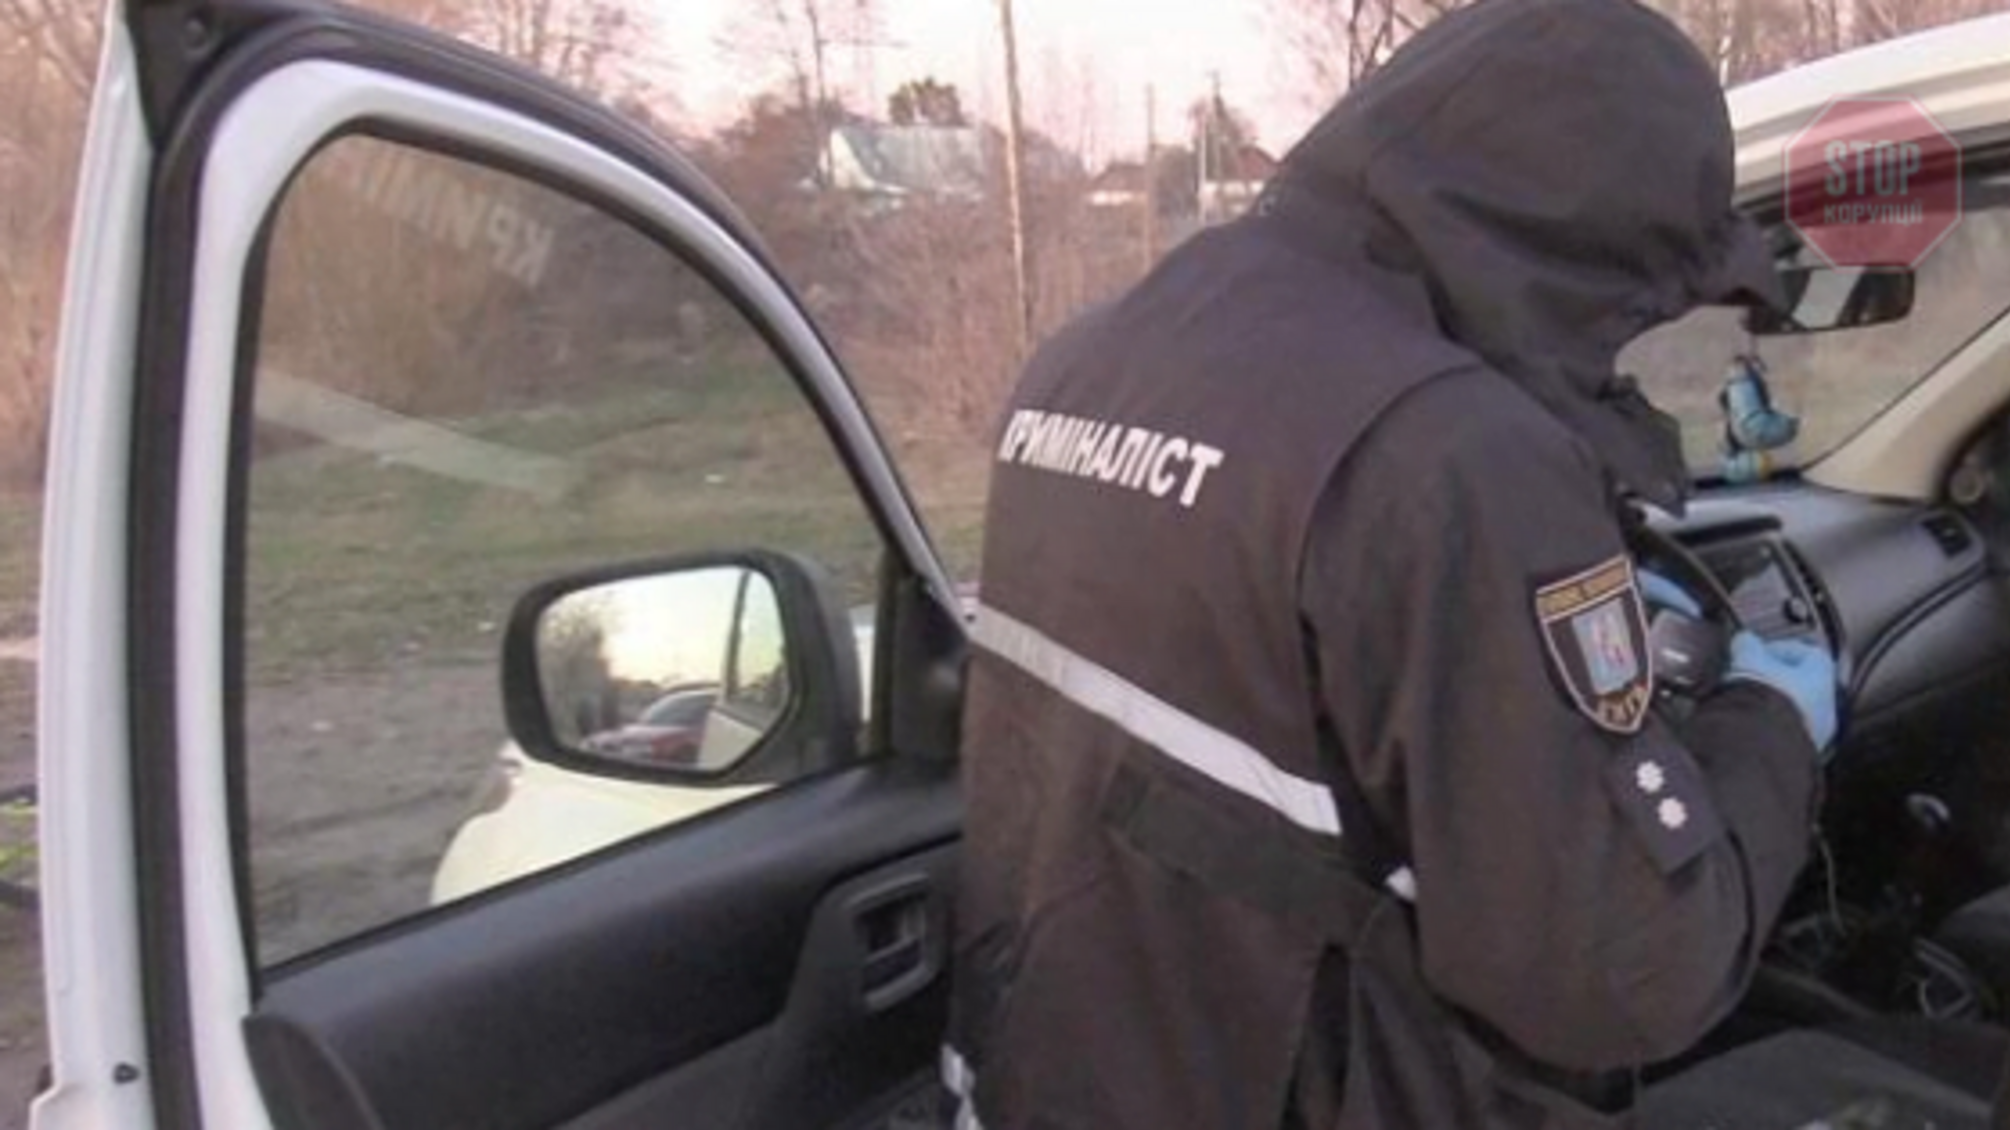 Викрали та вбили підприємця з Грузії: у Києві правоохоронці затримали двох злодіїв (фото, відео)